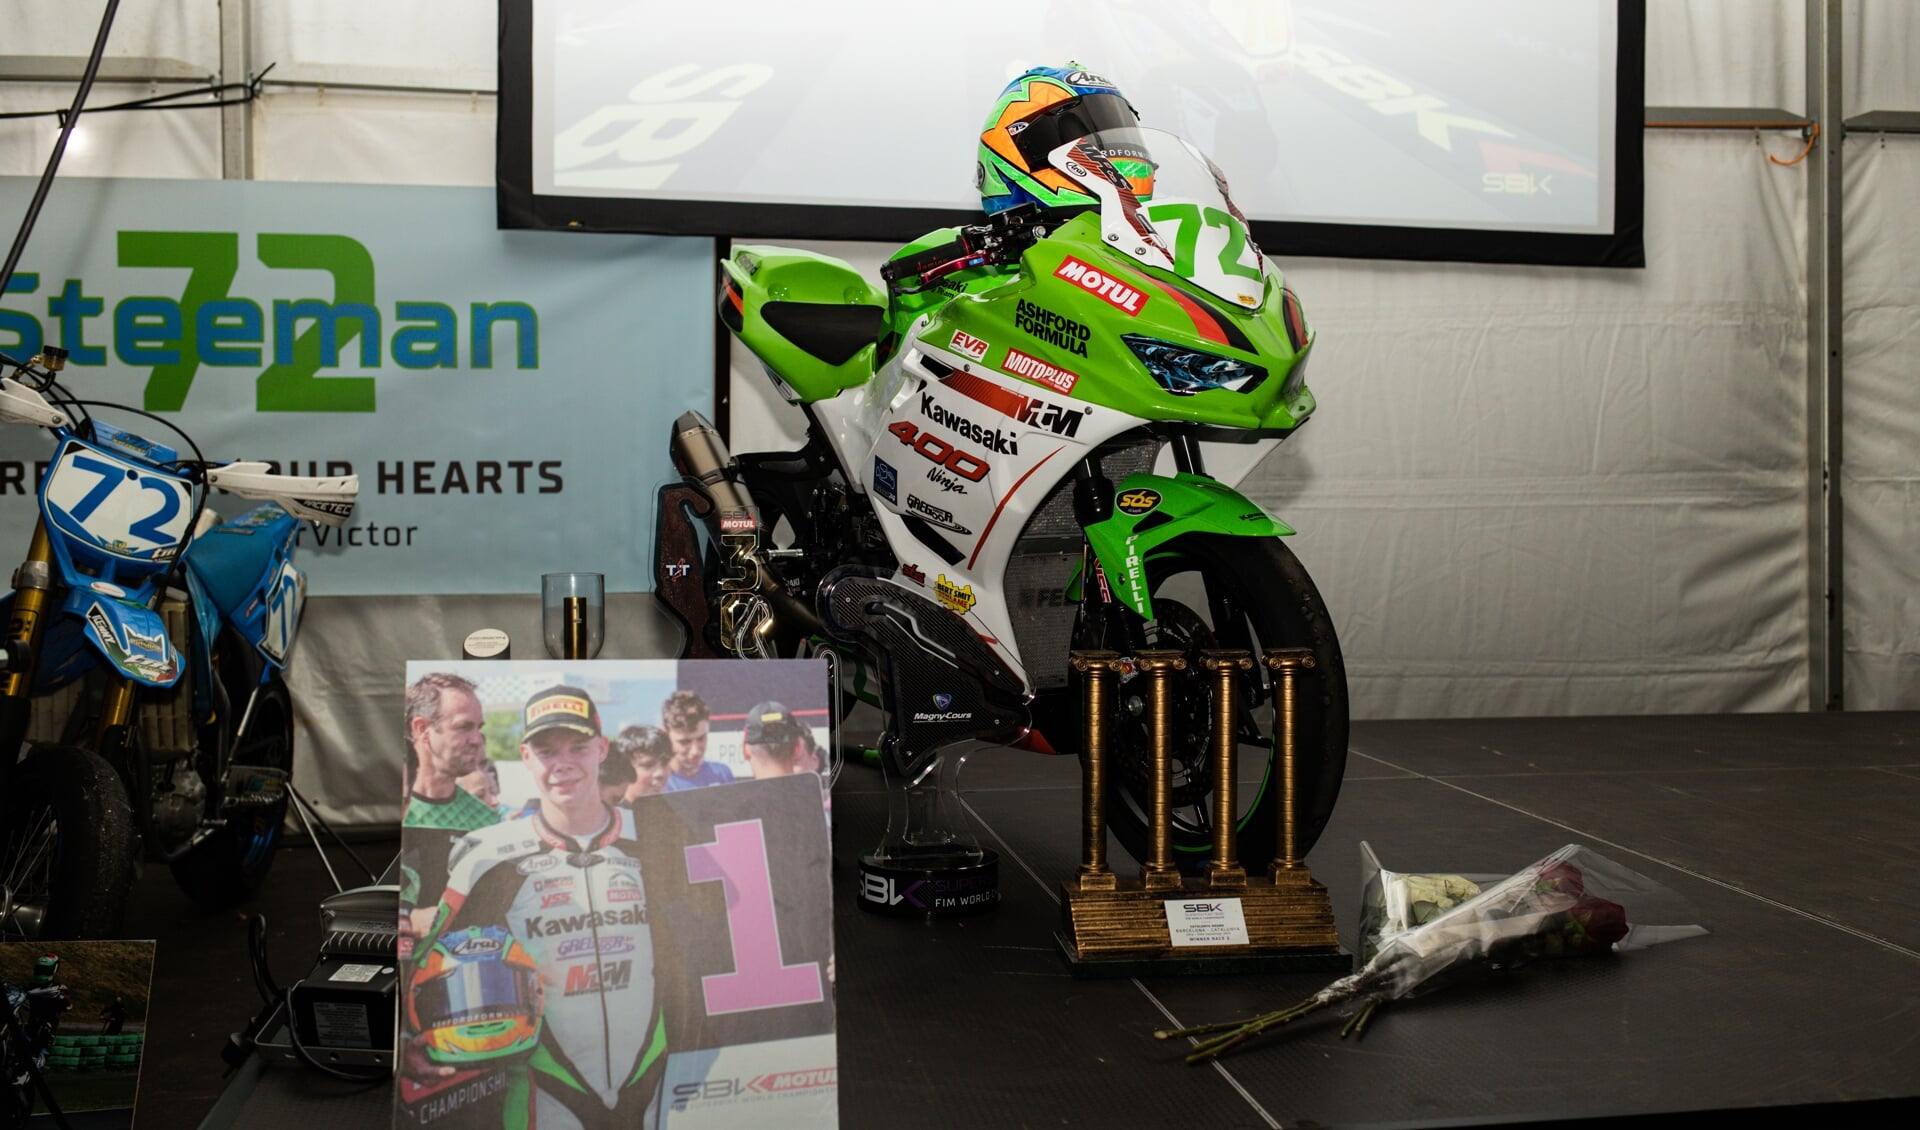 Op het TT Circuit in Assen werd een herdenkingsdienst gehouden voor Victor Steeman. Foto: Damon Teerink